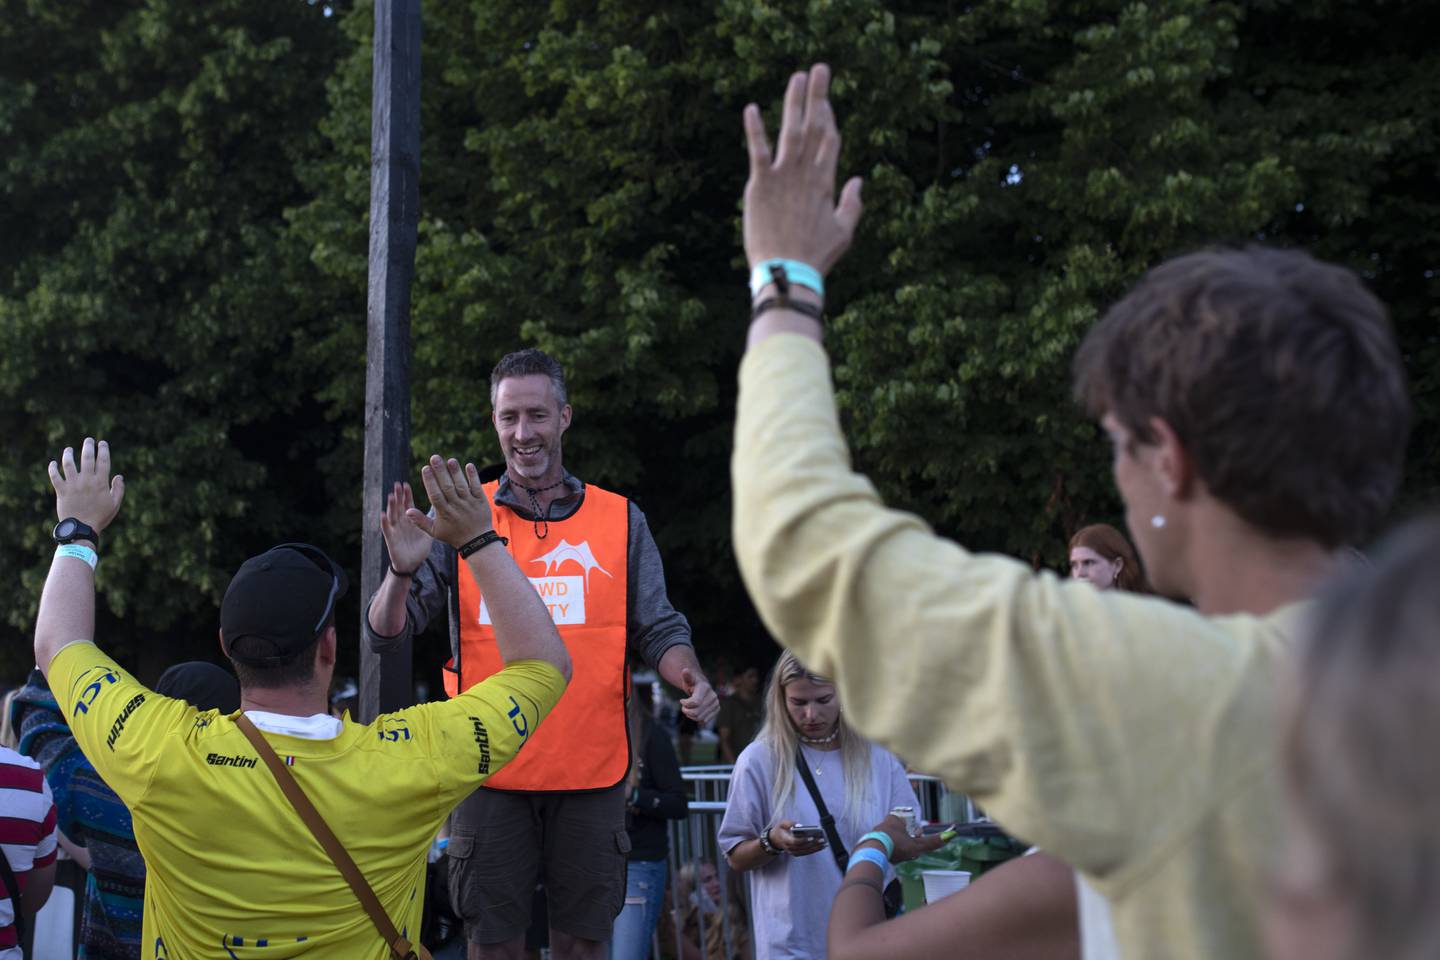 På vei inn i pitchen sjekker en av de frivillige vaktene bånd, og får en high five i farta.